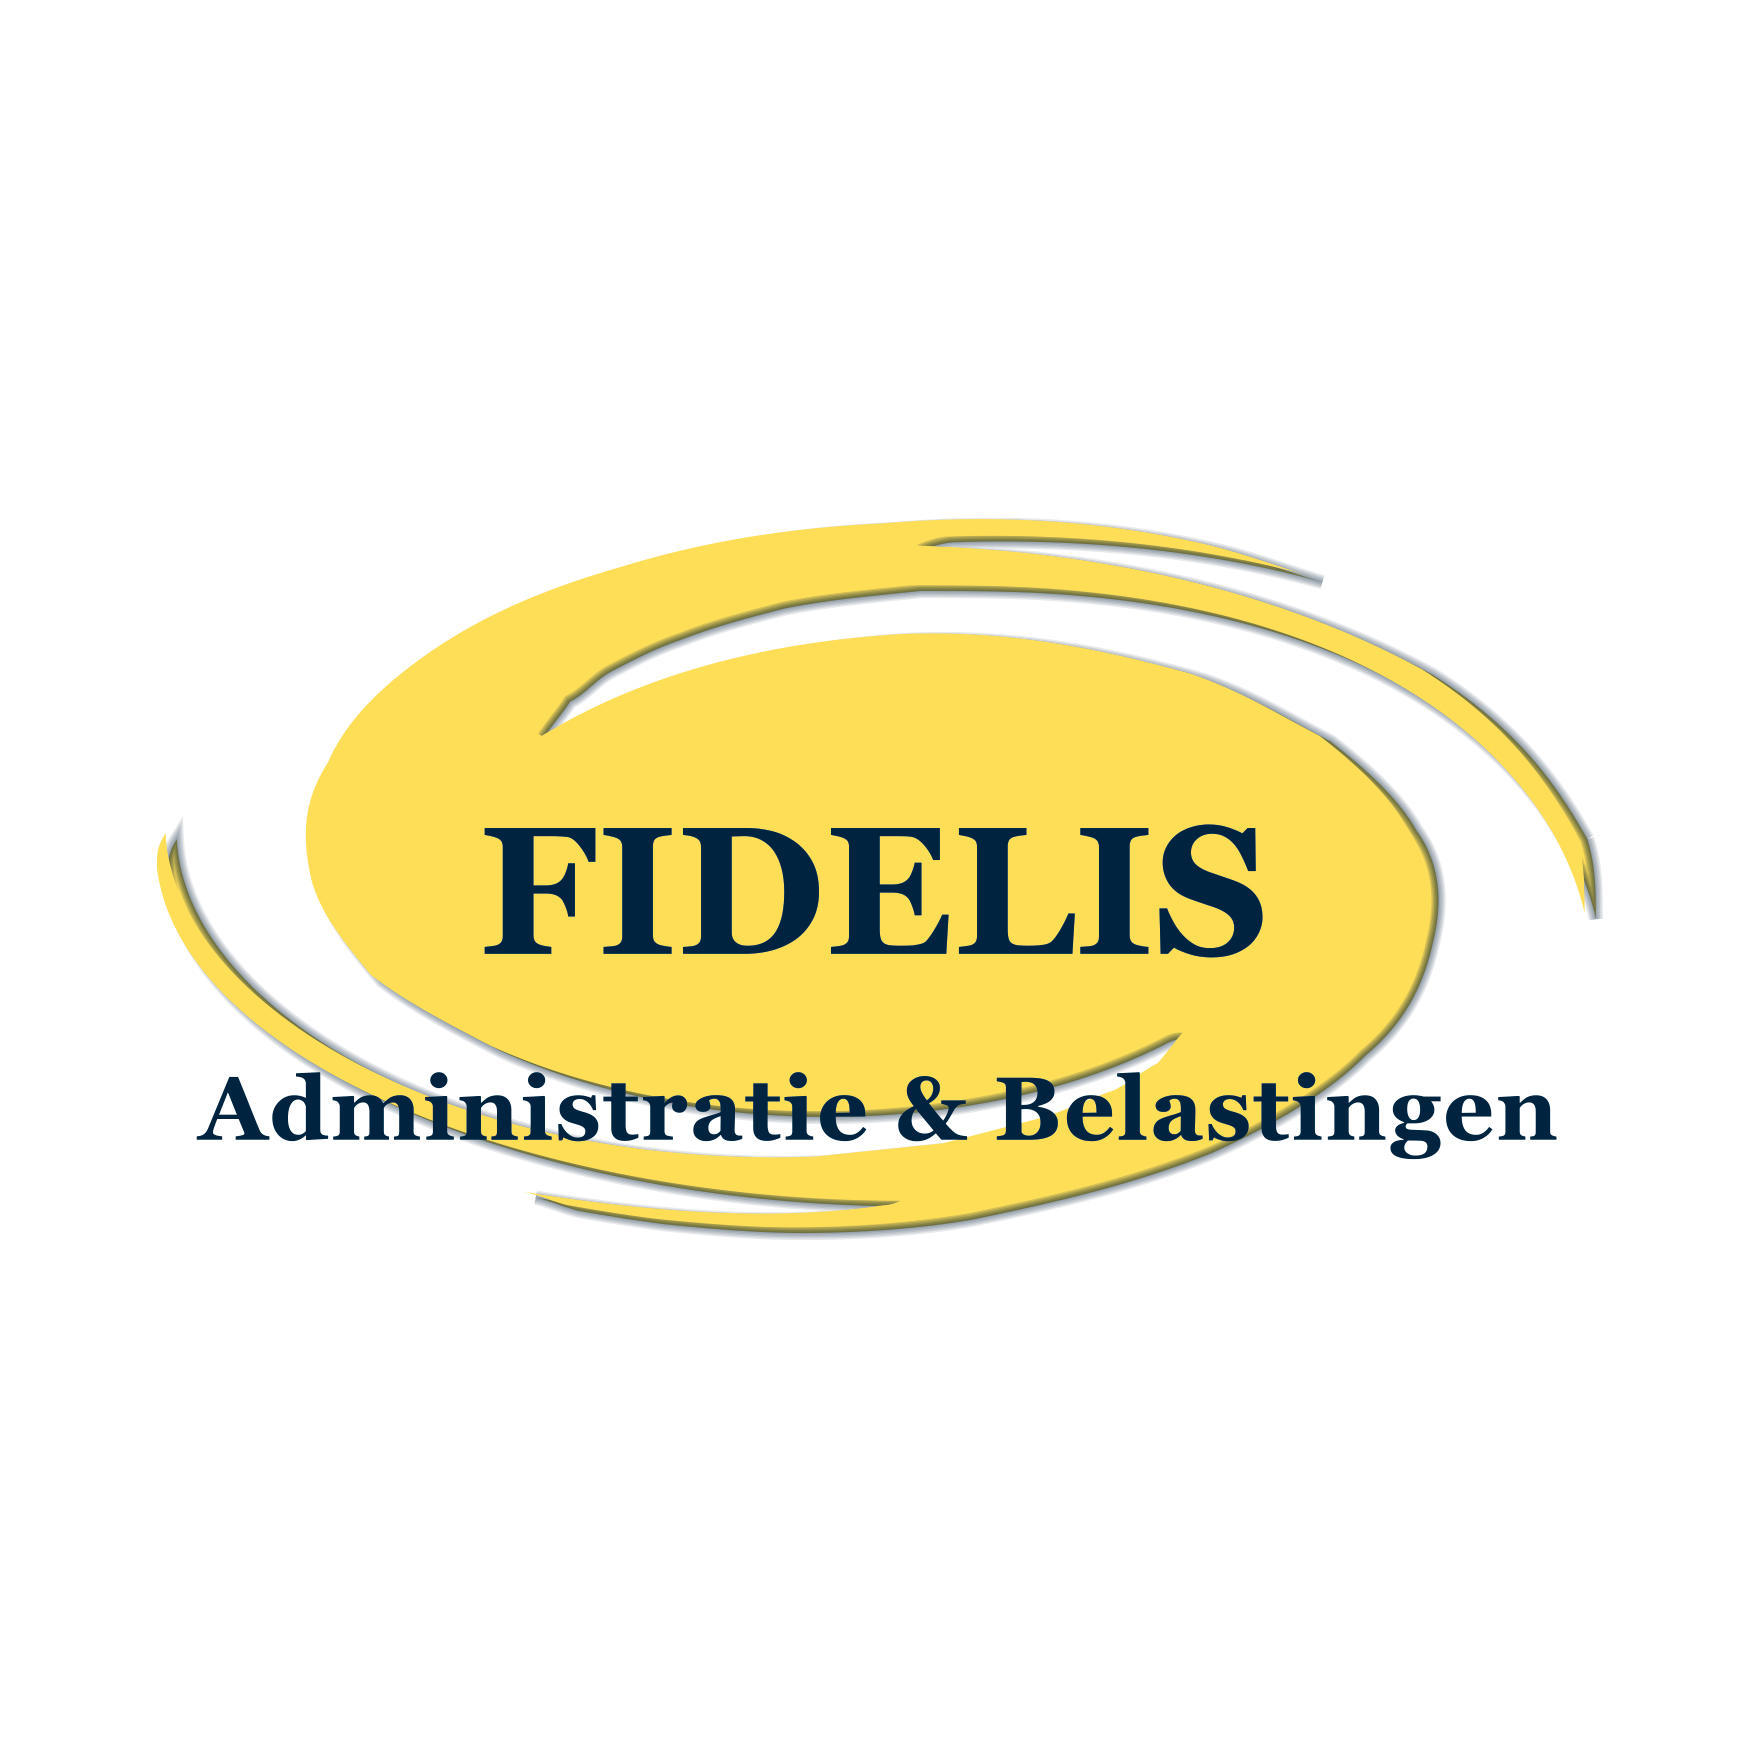 FIDELIS Administratie & Belastingen Logo